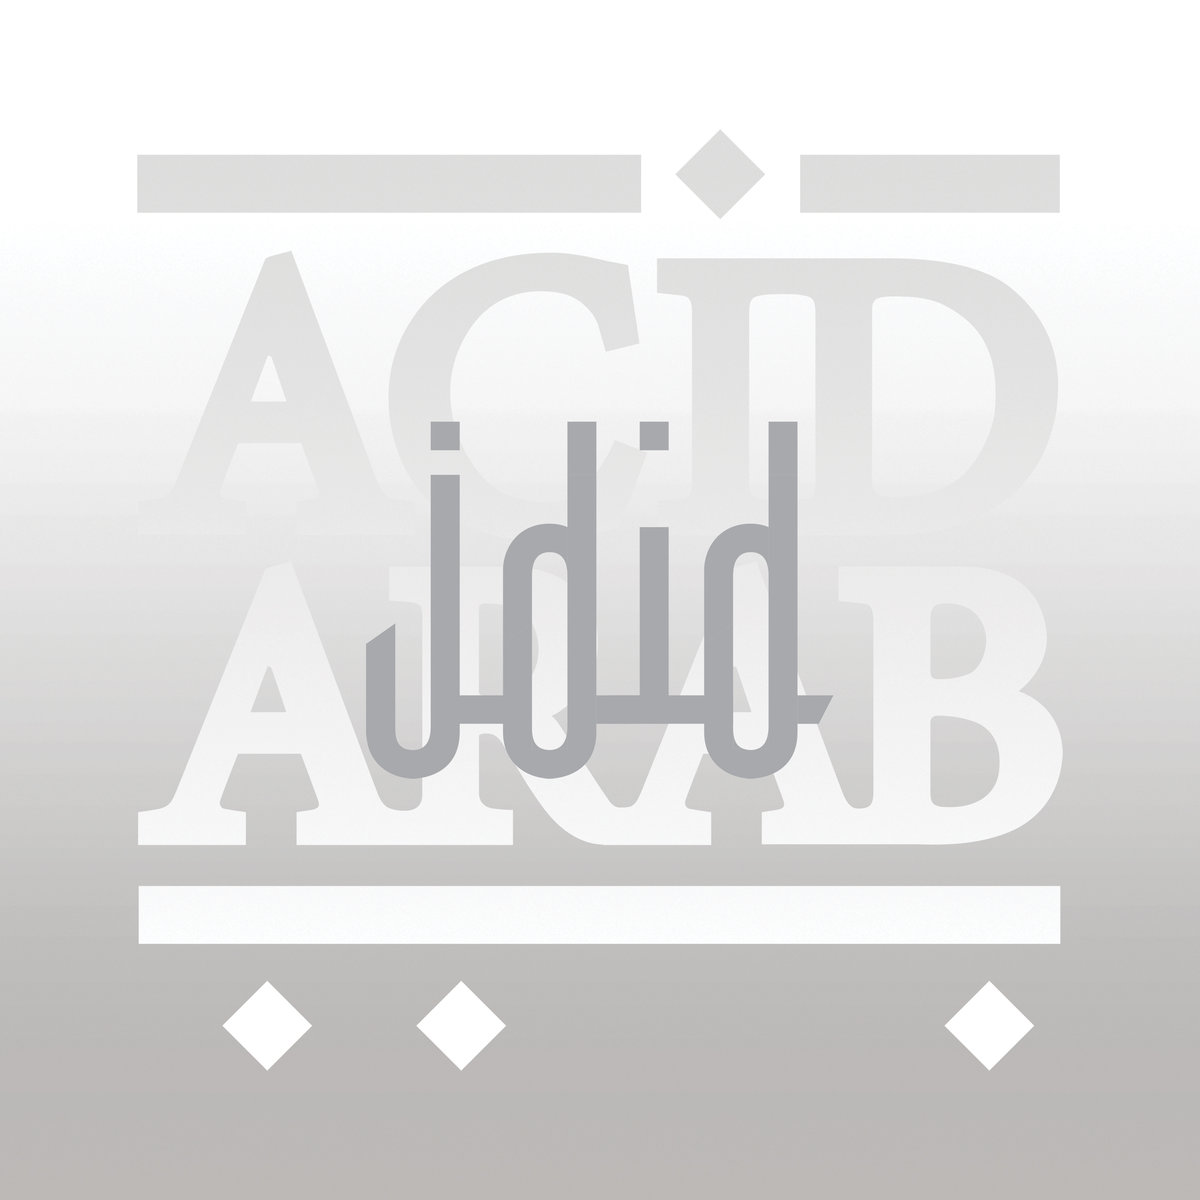 Acid Arab — Jdid